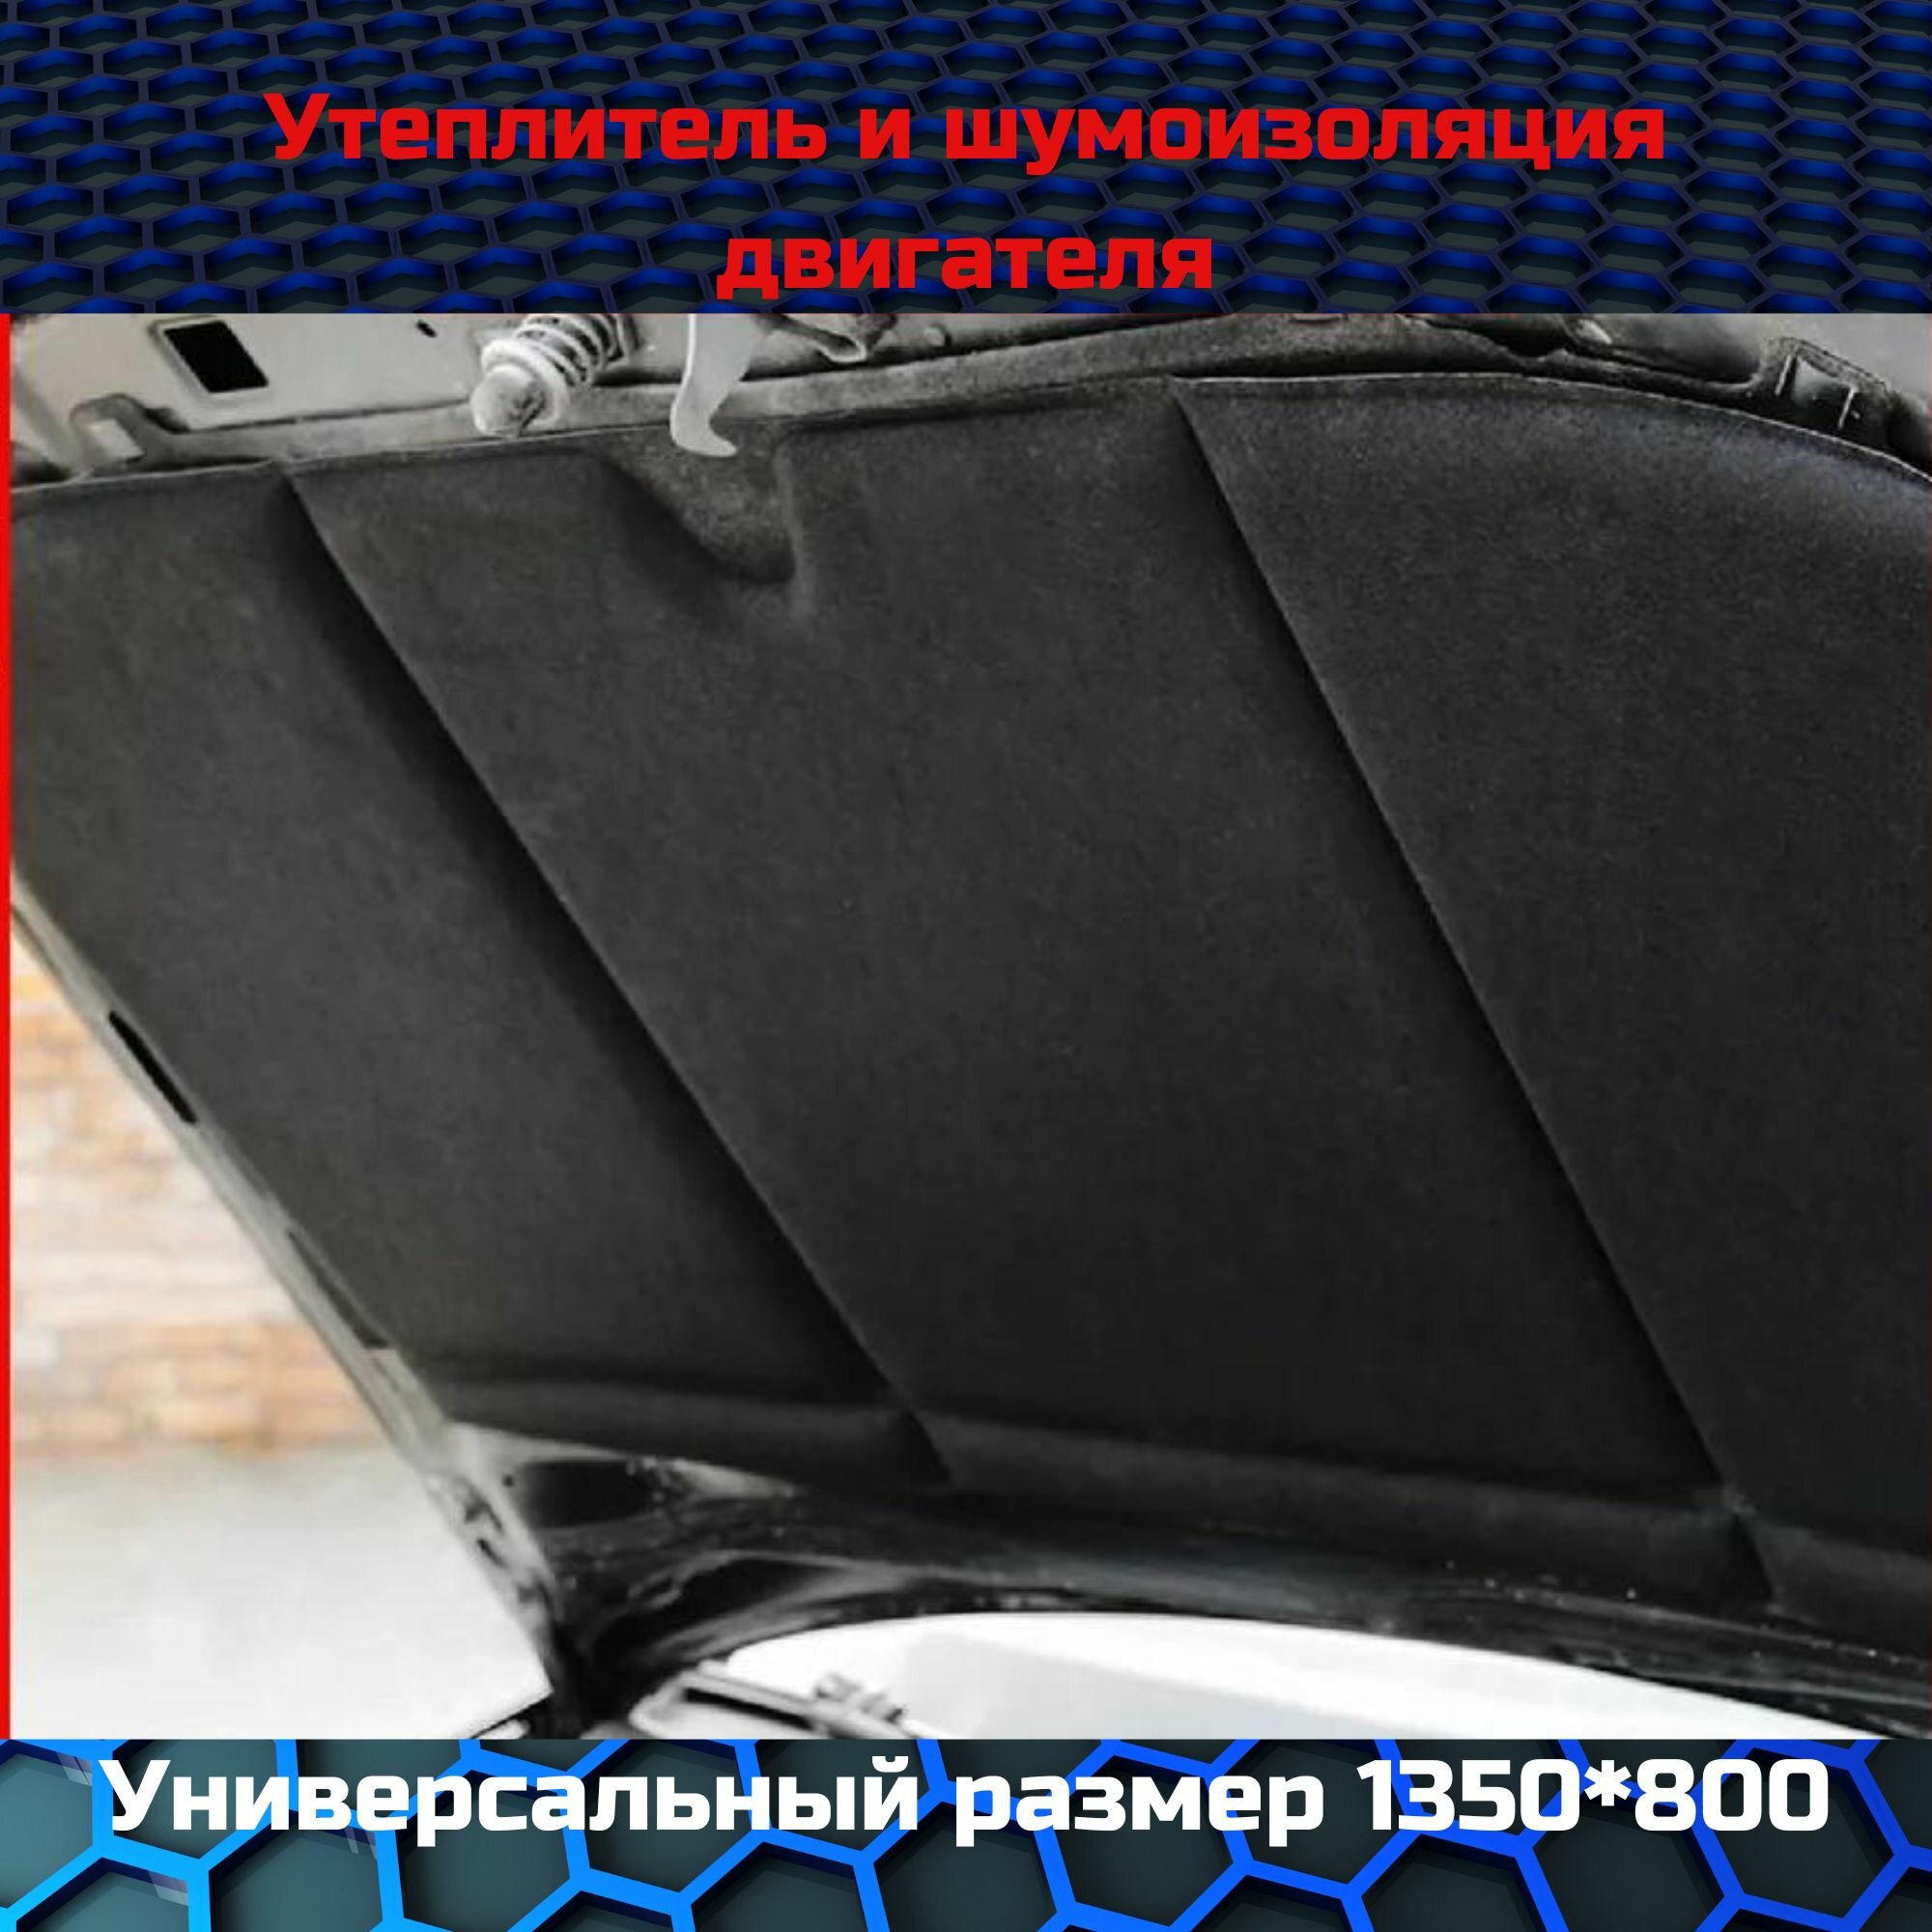 Шумоизоляция капота "HeatShield" "XL" 135x80 см, стандартпласт 05789-01-00, утеплитель двигателя / автоодеяло / автотепло